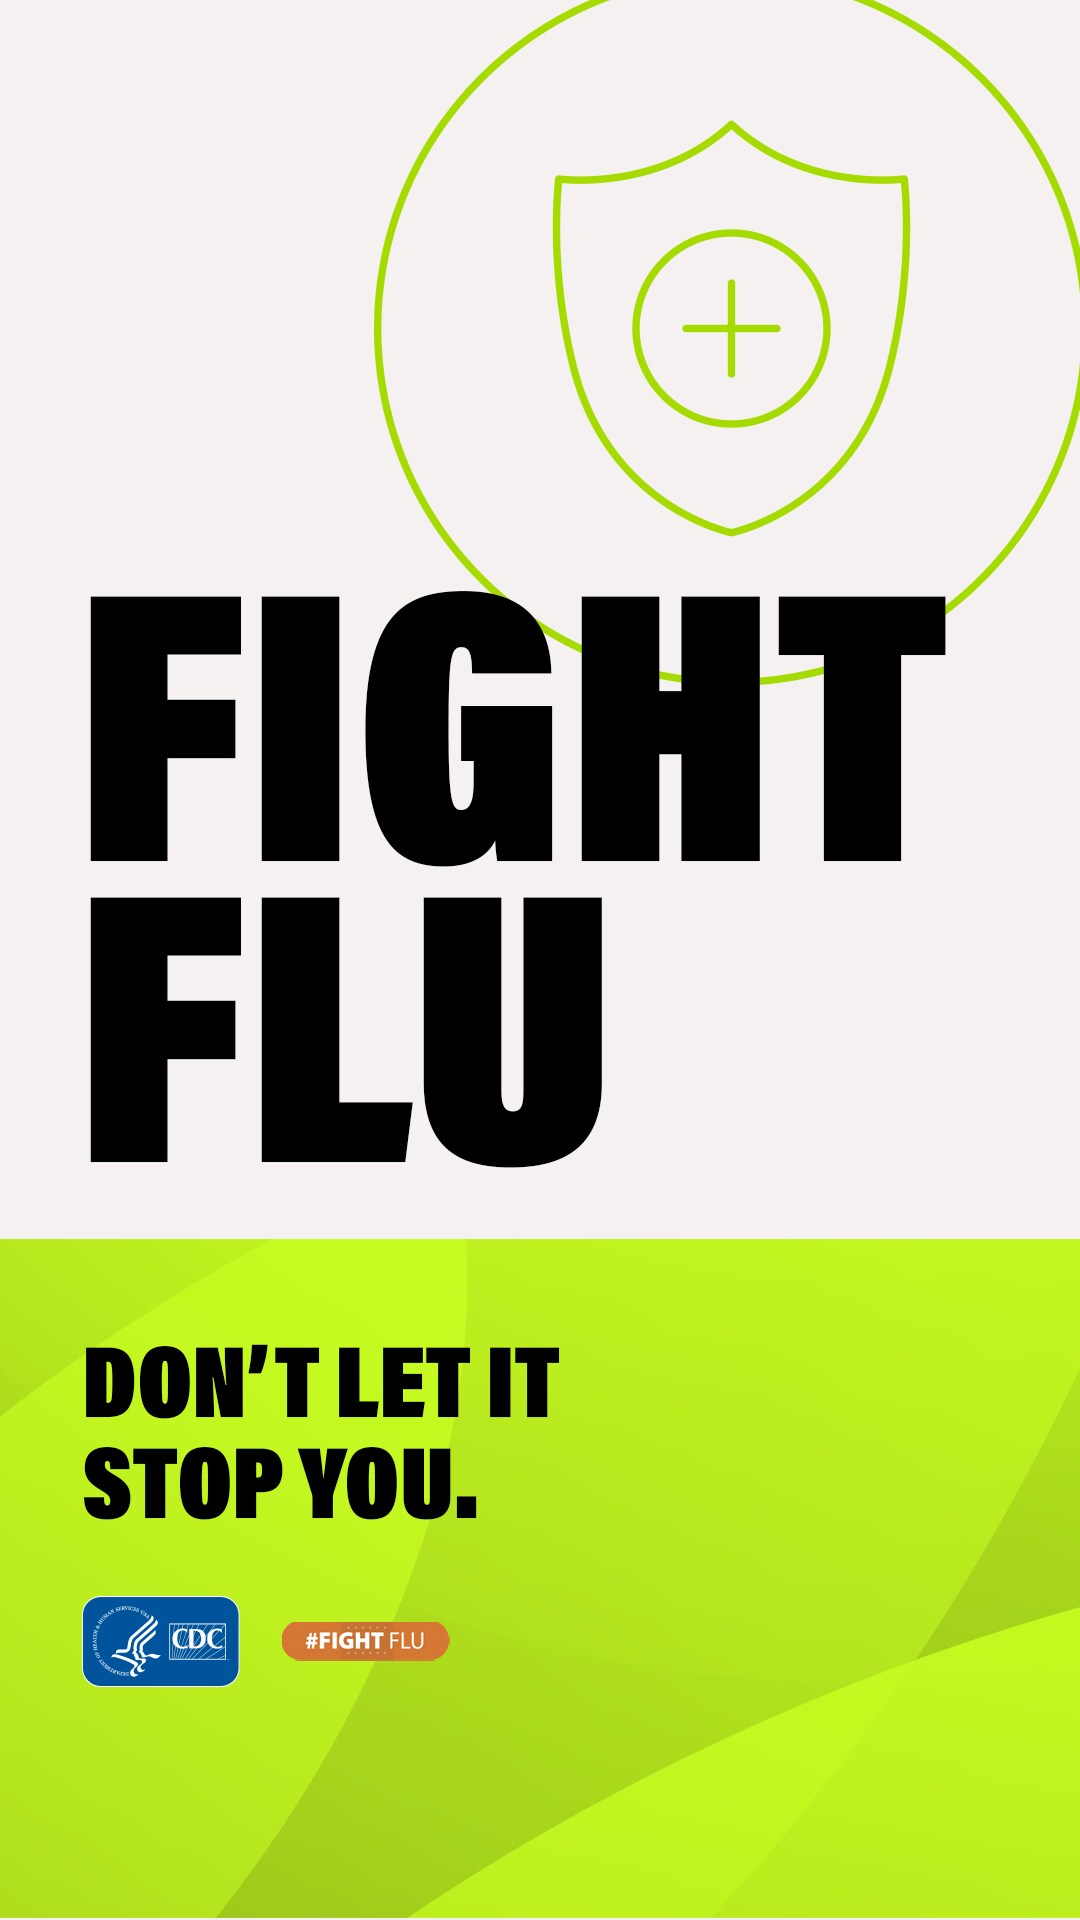 Ayúdelos a combatir la influenza